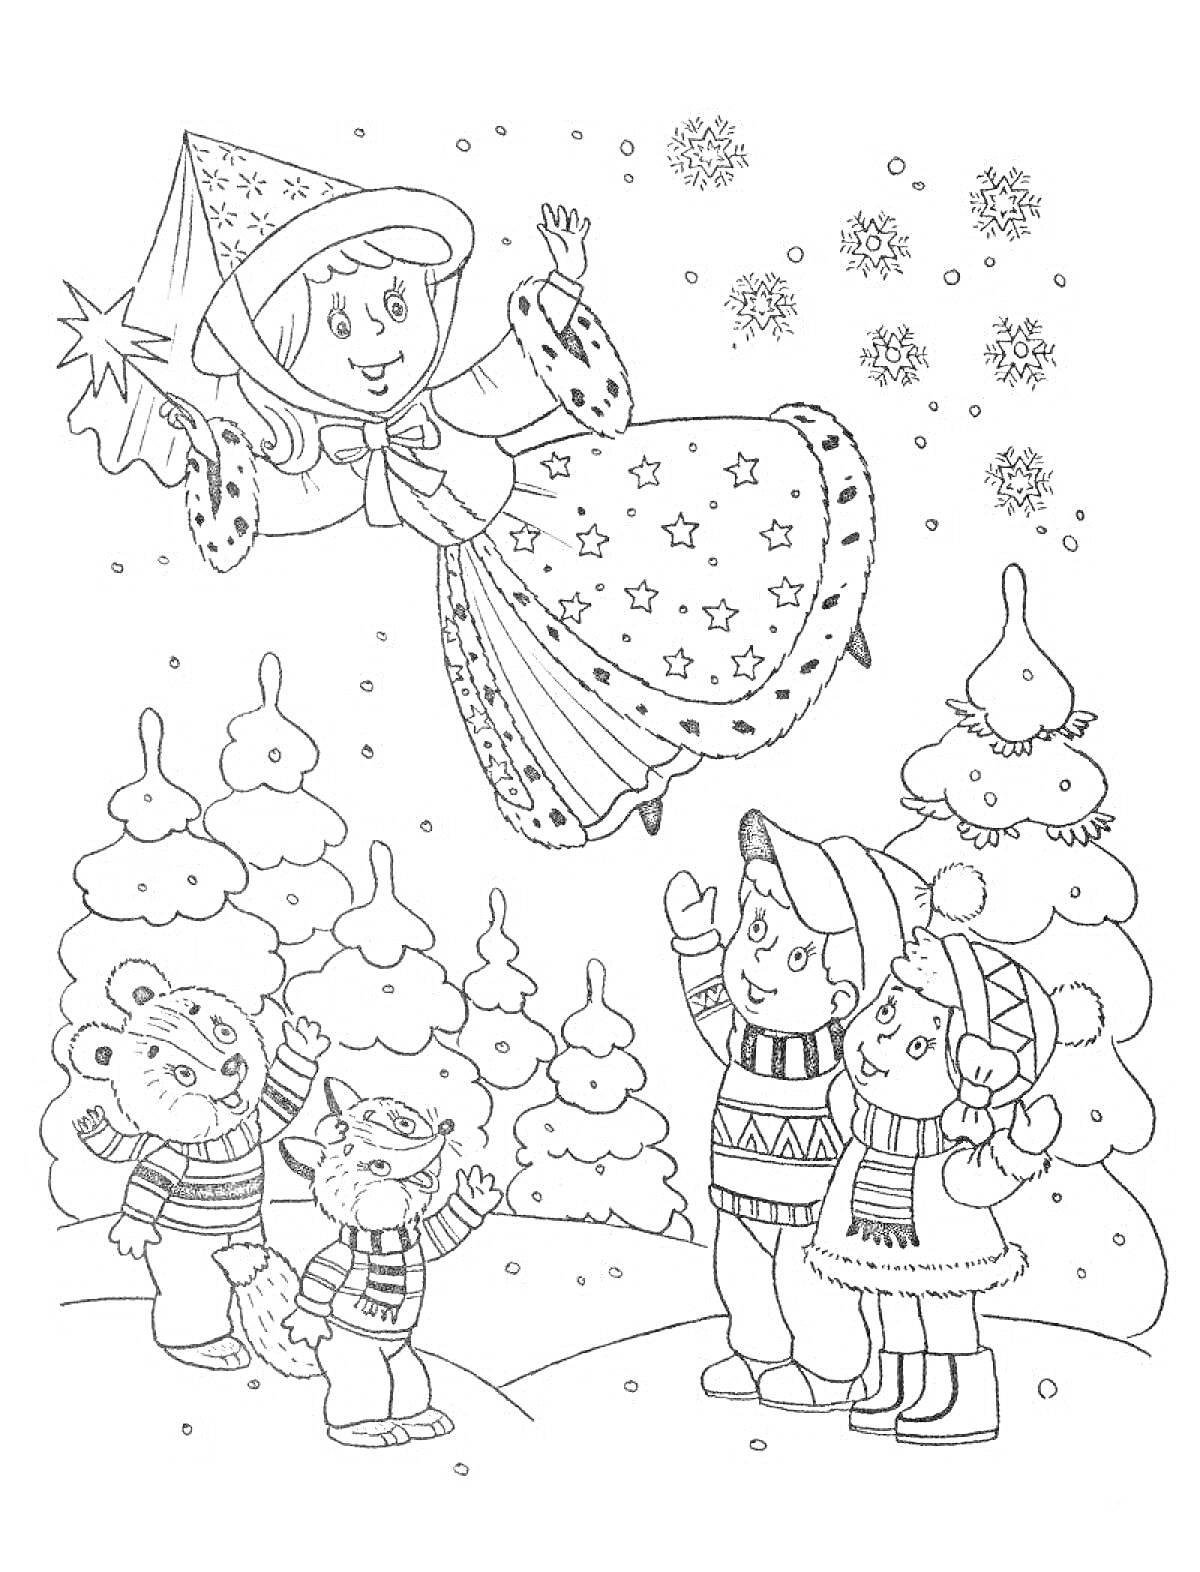 Раскраска Зимняя фея с волшебной палочкой, дети в зимней одежде, животные, заснеженный лес